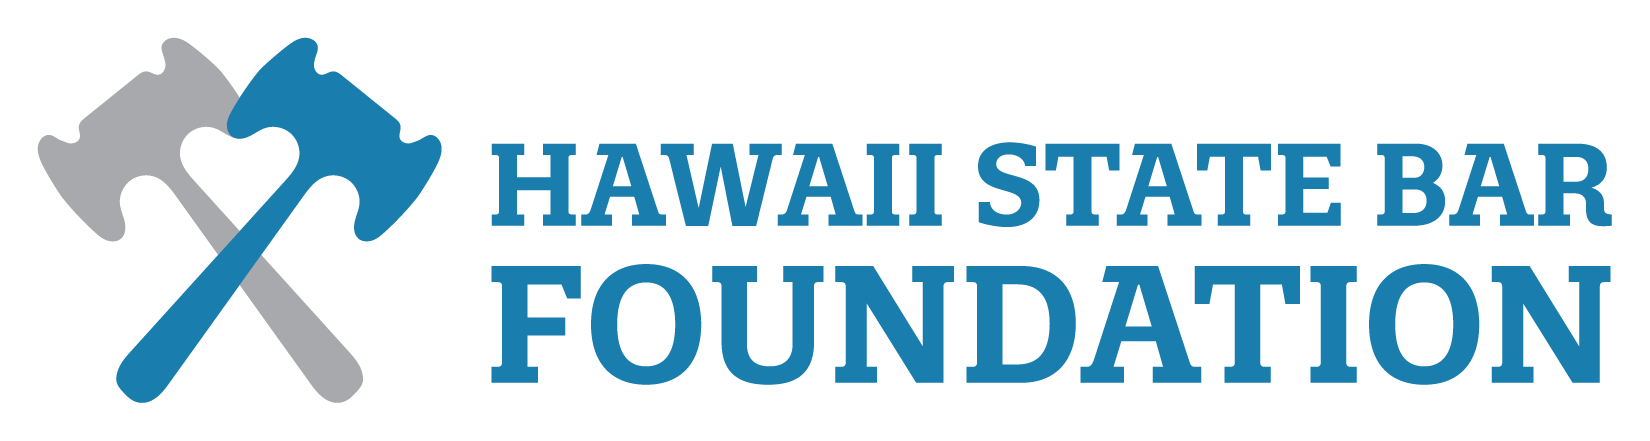 Hawaii State Bar Foundation